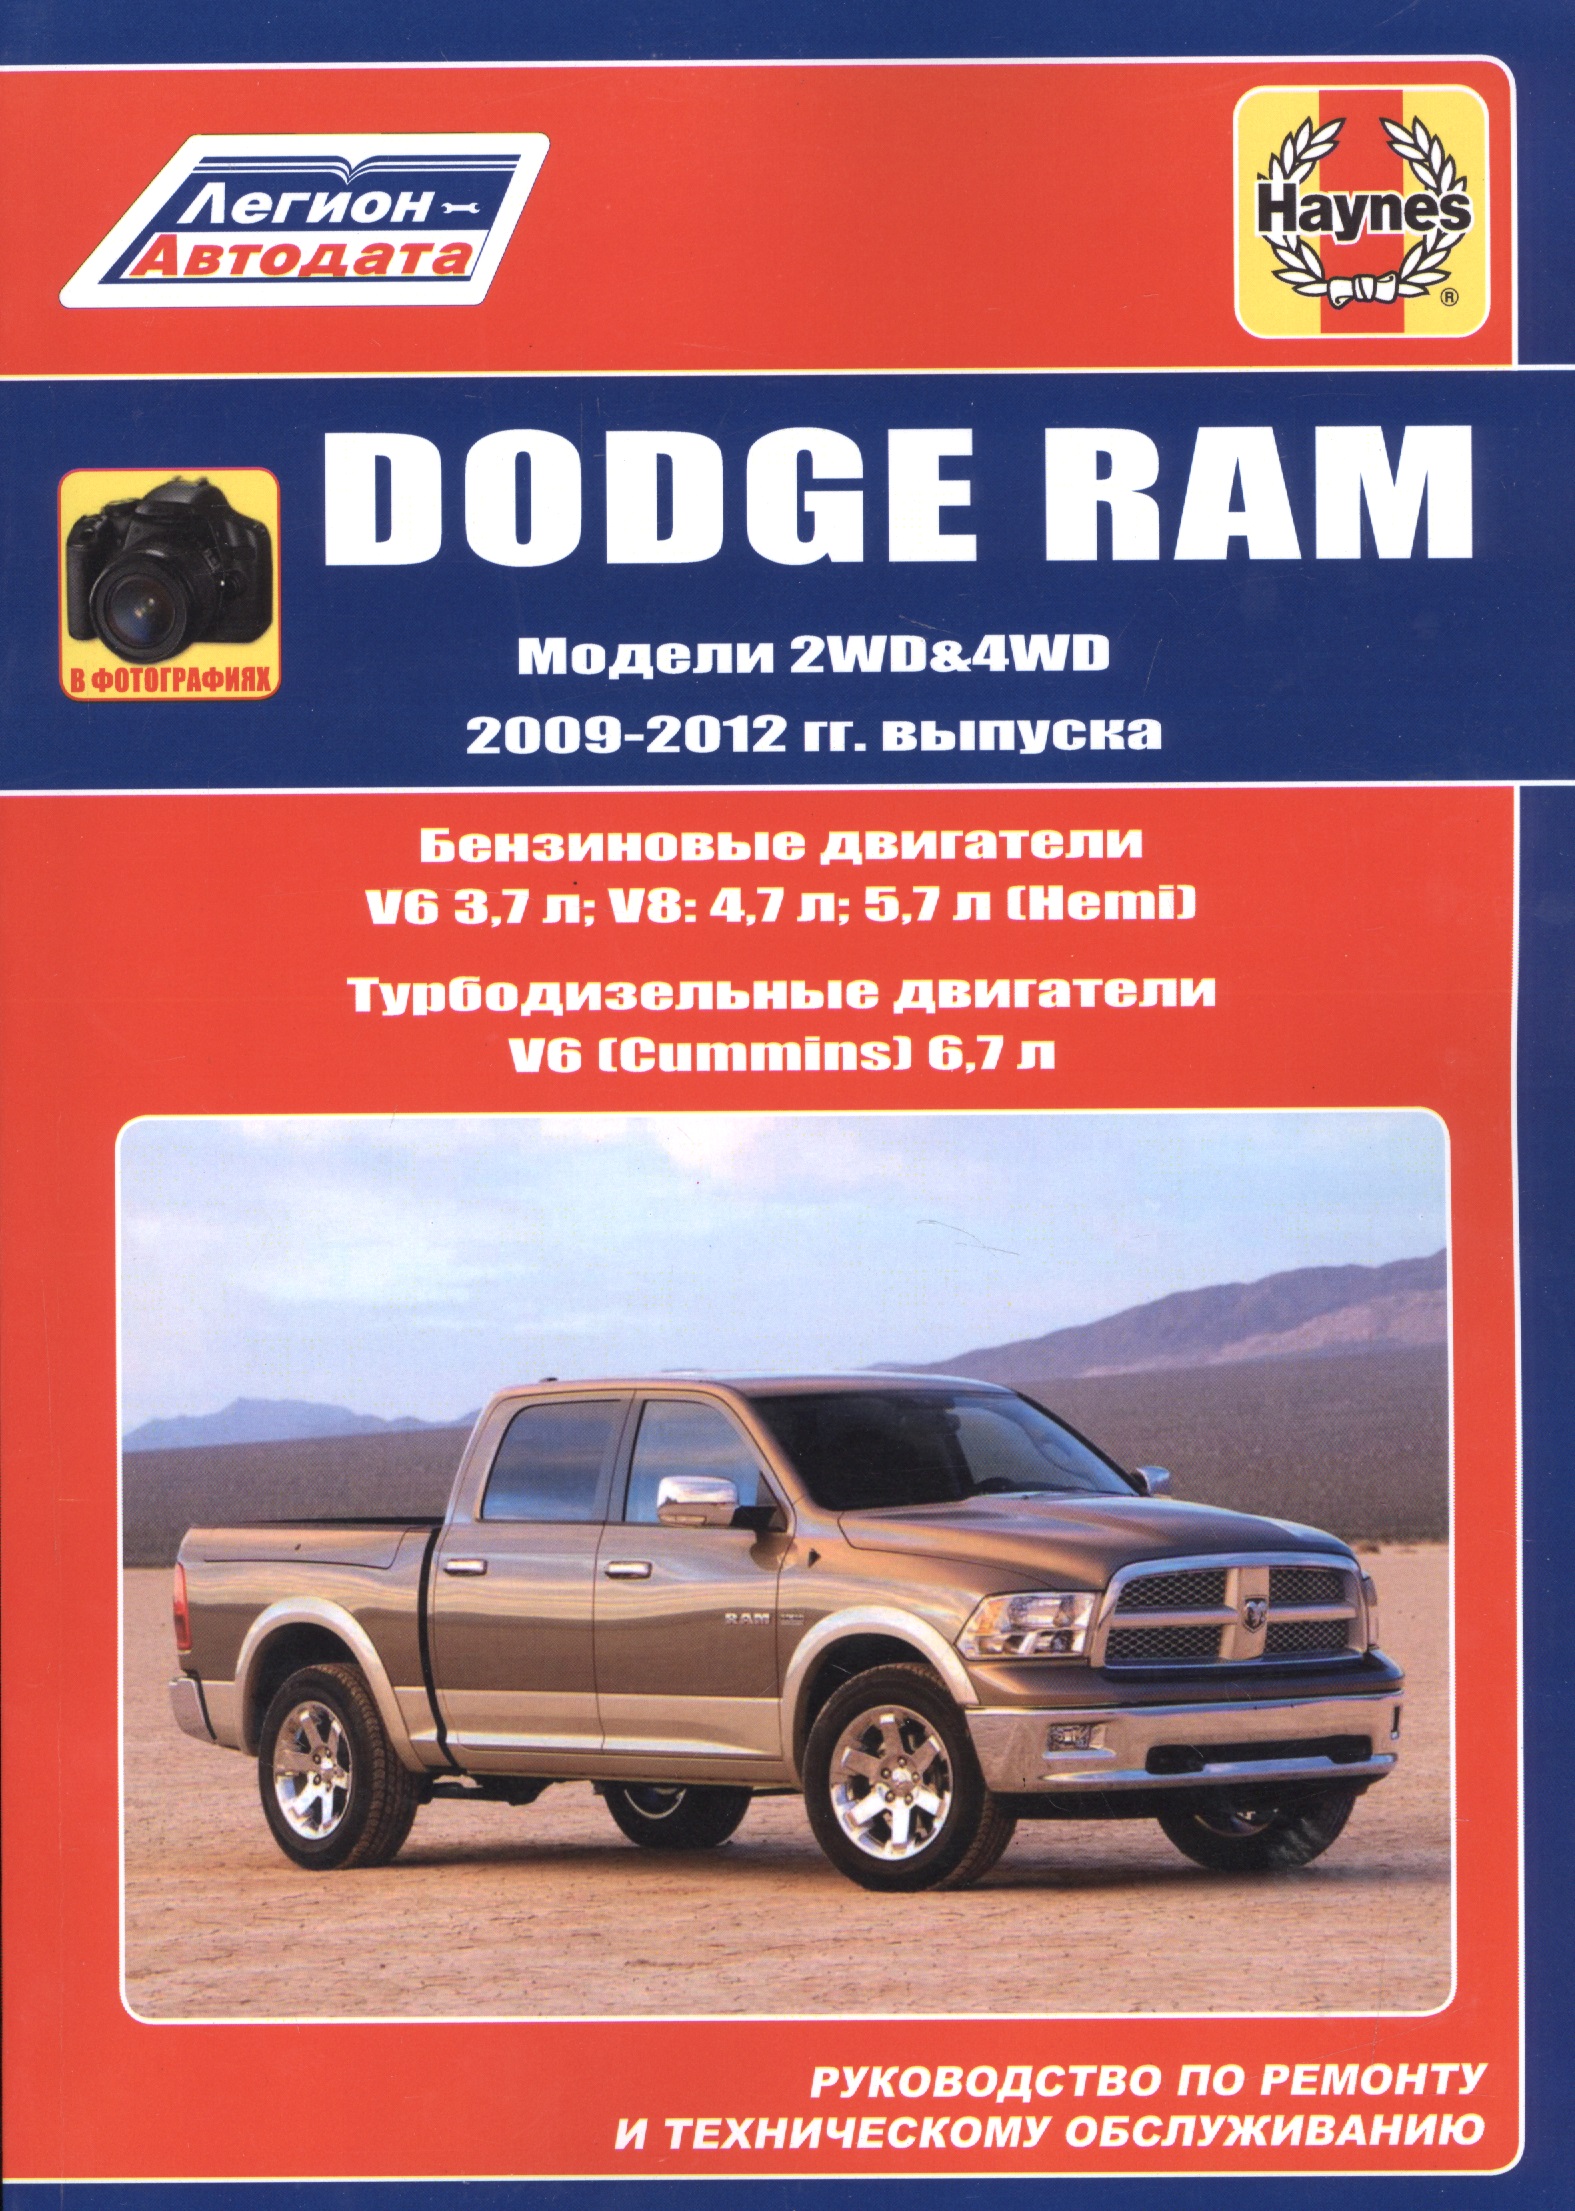 Dodge RAM. Модели 2WD&WD 2009 - 2012 гг. выпуска с бензиновыми V6 3,7л. V8: 4,7л .5,7л (Hemi) и турбодизельным V6 (Cummins) 6,7л двигателями. Руководство по ремонту и техническому обслуживанию jf011e для 2007 2012 nissan dodge электромагнитный клапан коробки передач wavebox соленоид re0f10a